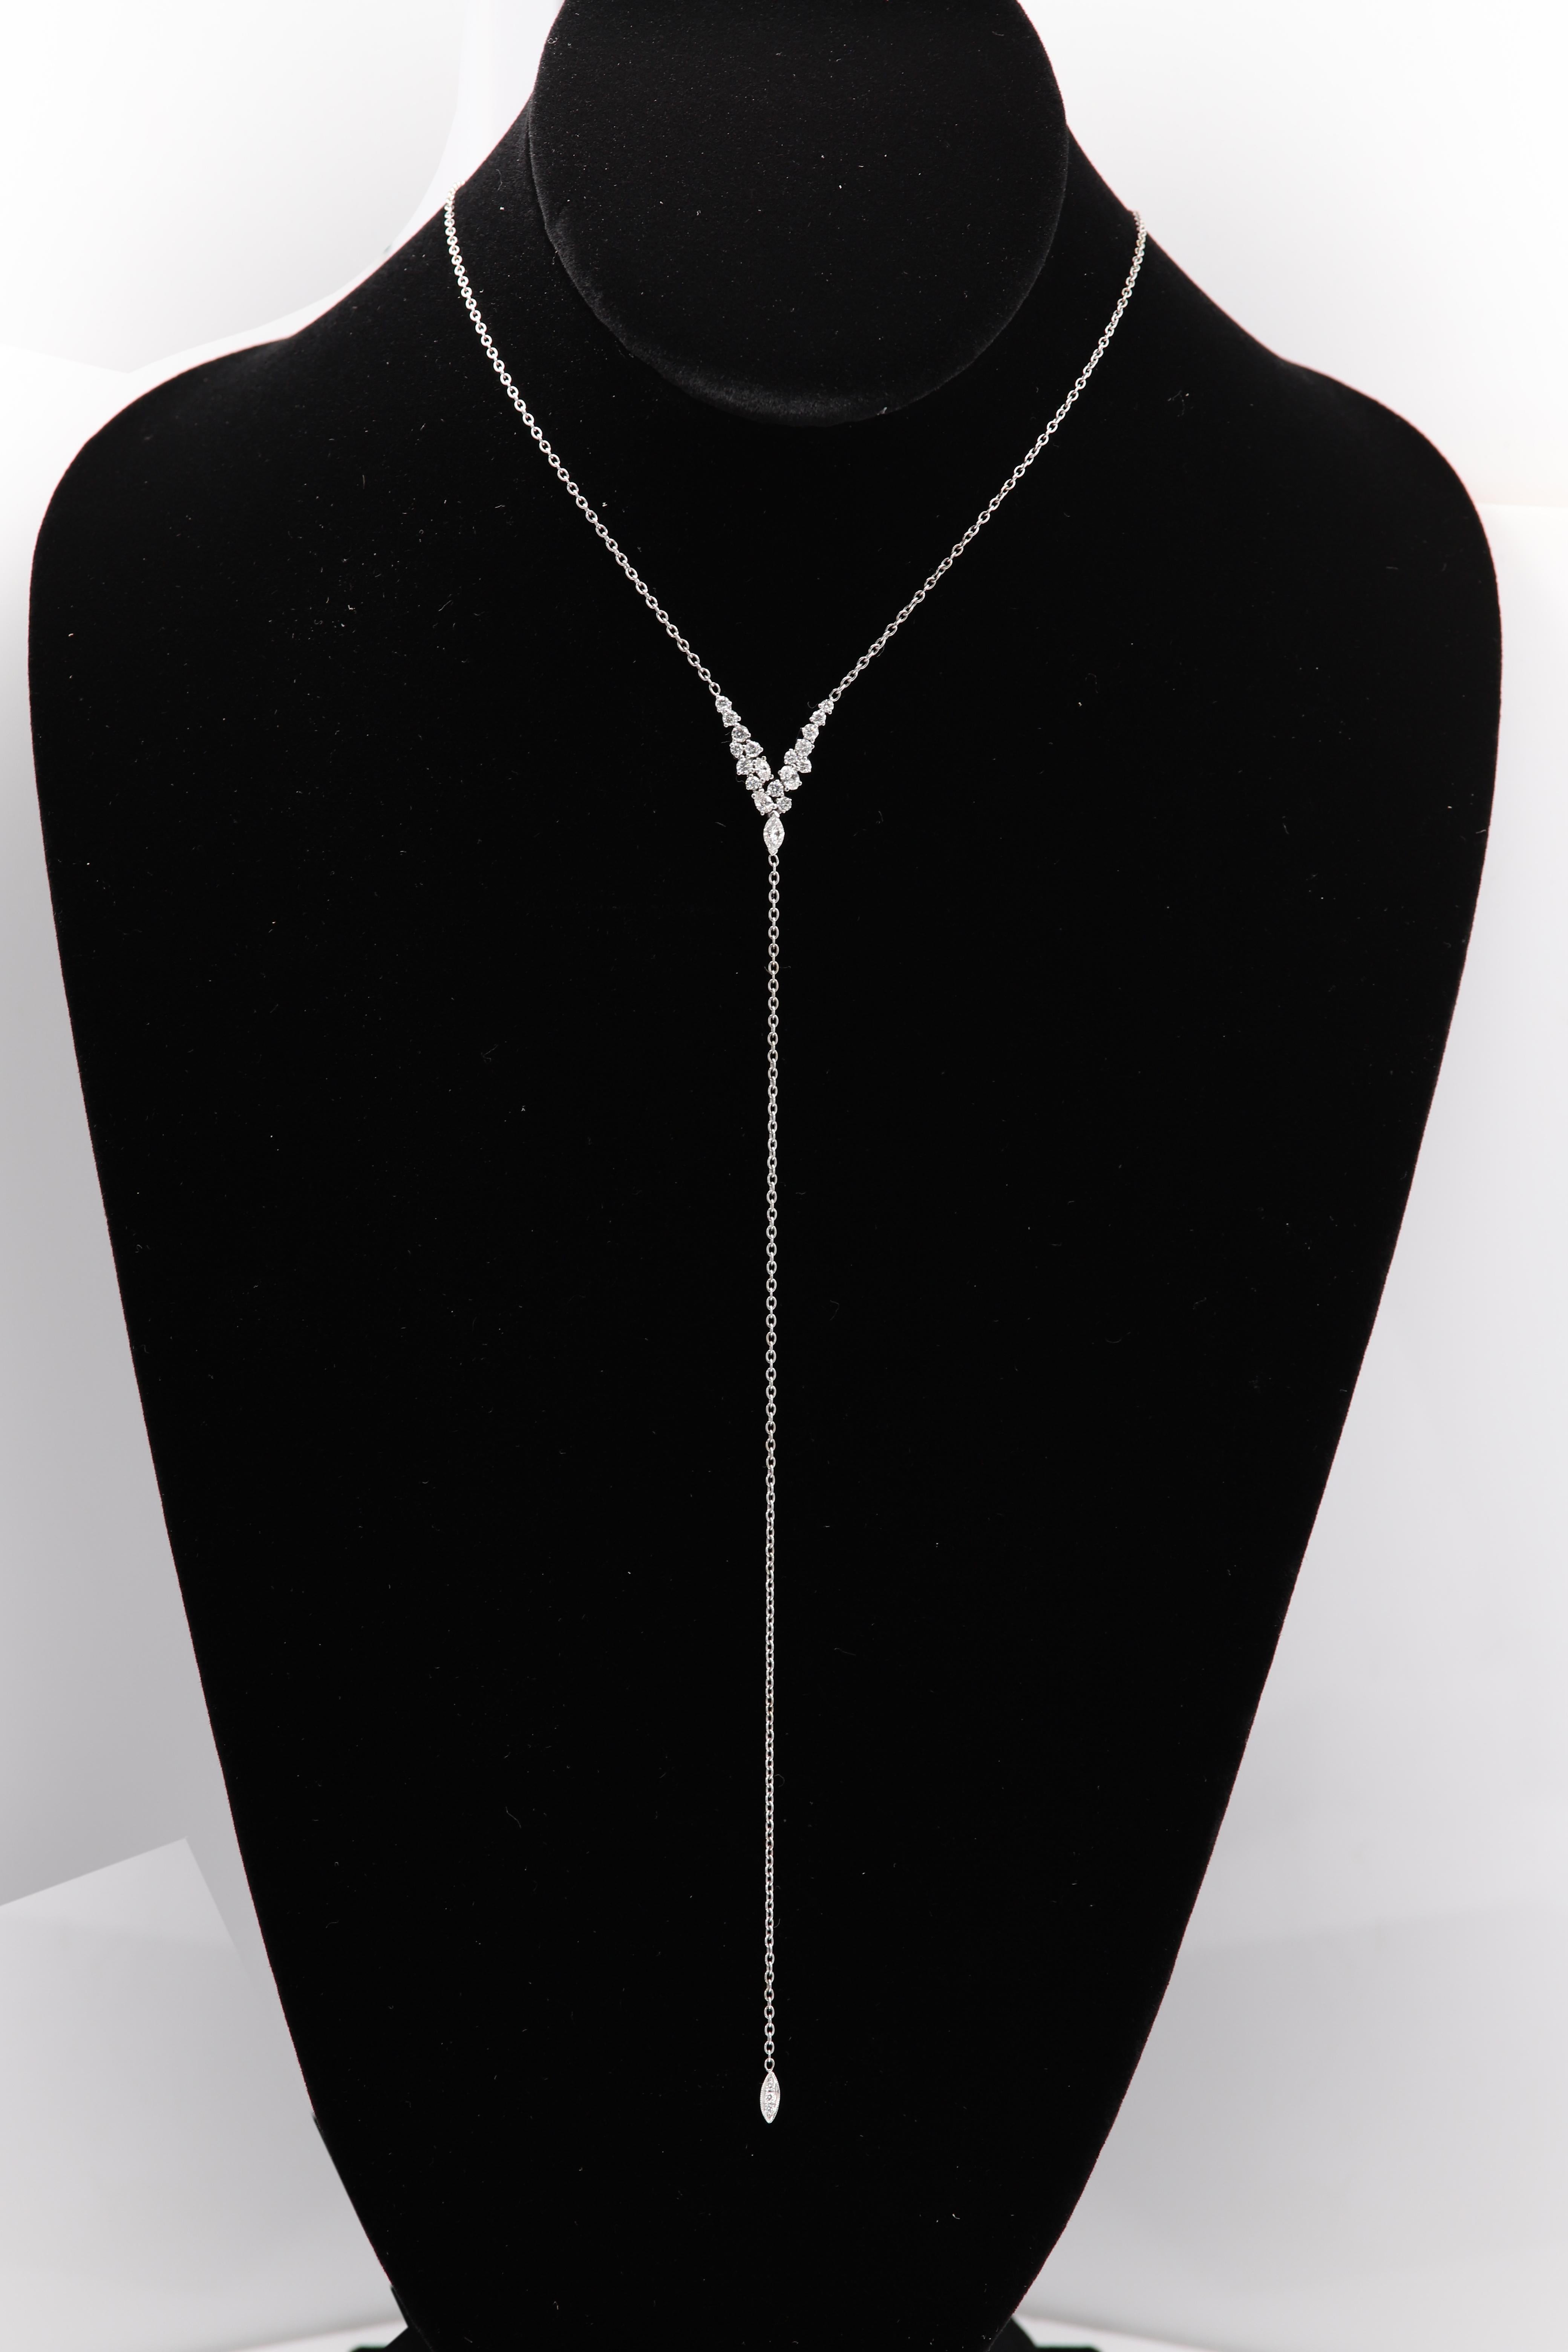 Diamant-Quasten-Halskette
18k Weißgold 6,0 Gramm
in der Mitte befindet sich eine Gruppe von Diamanten - verschiedene Formen
insgesamt ca. 1,0 Karat ca. G-H-I1-SI
Länge der Mitte baumeln ist ca. 7' Zoll
Gesamtlänge des Halses - einstellbar 16,5' -